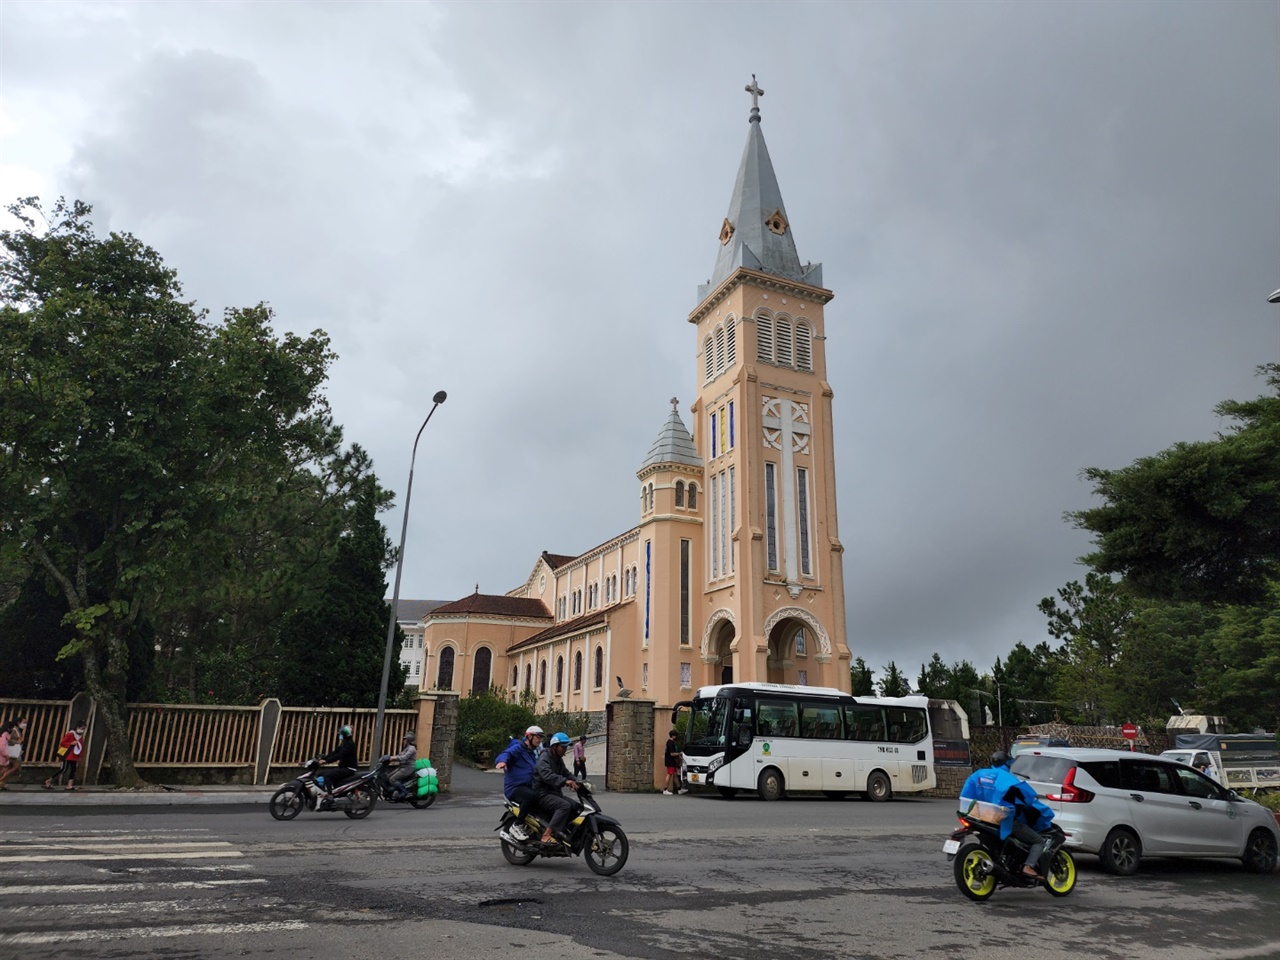 달랏 시내에서 가까운 니콜라스 바리 성당은 이국적인 달랏의 향취를 더해준다. 